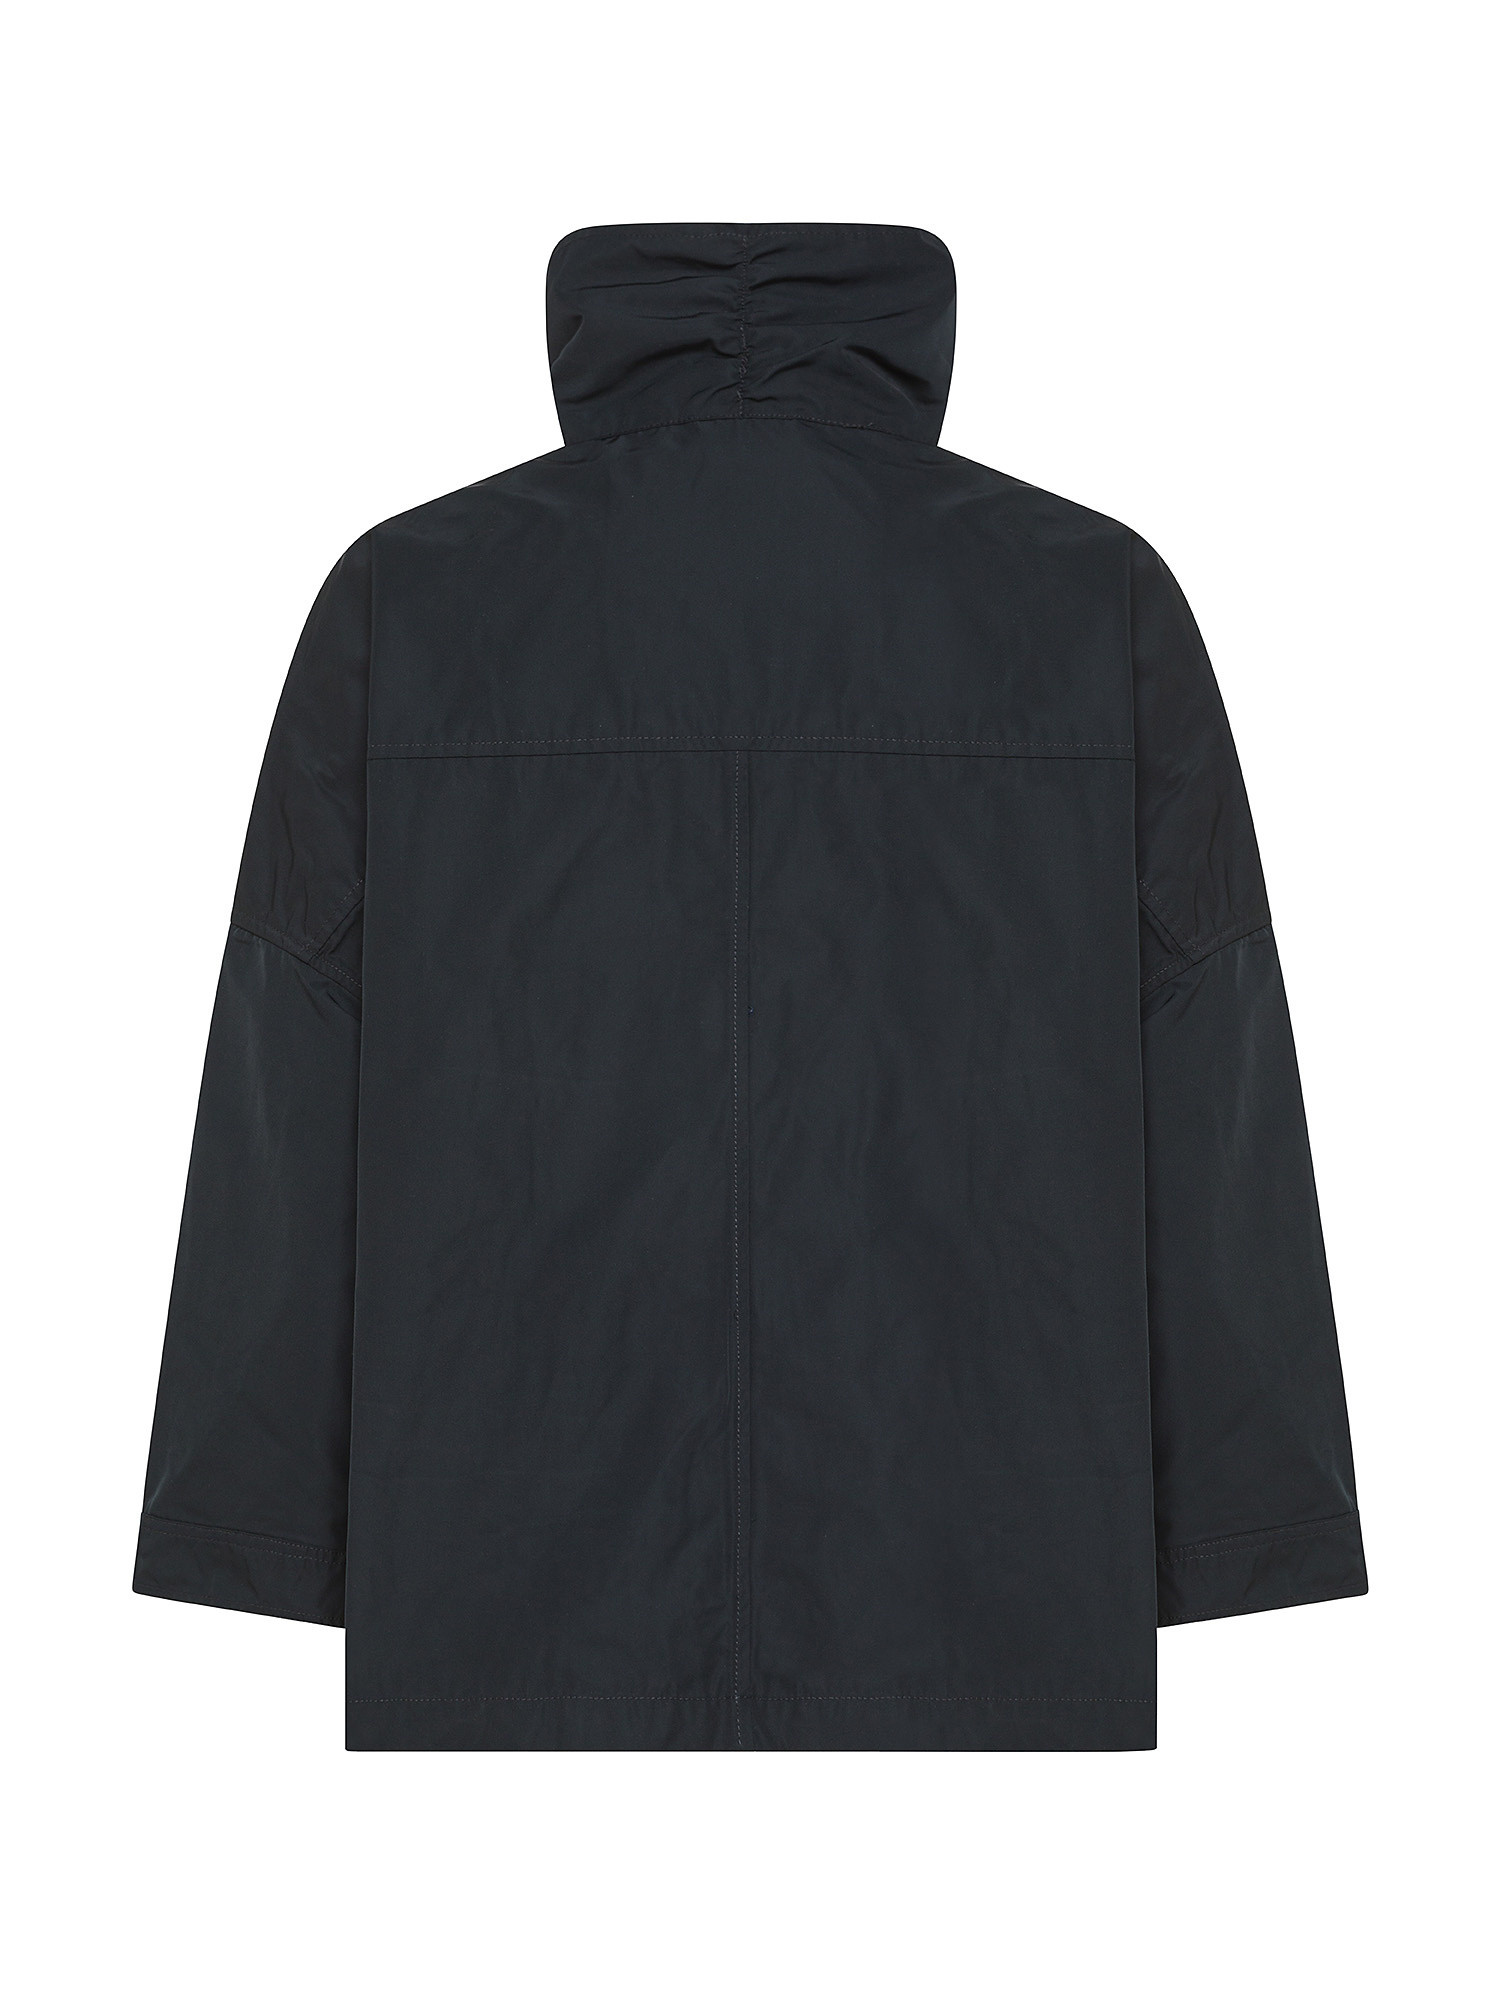 Oof Wear - Cropped Jacket, Black, large image number 1